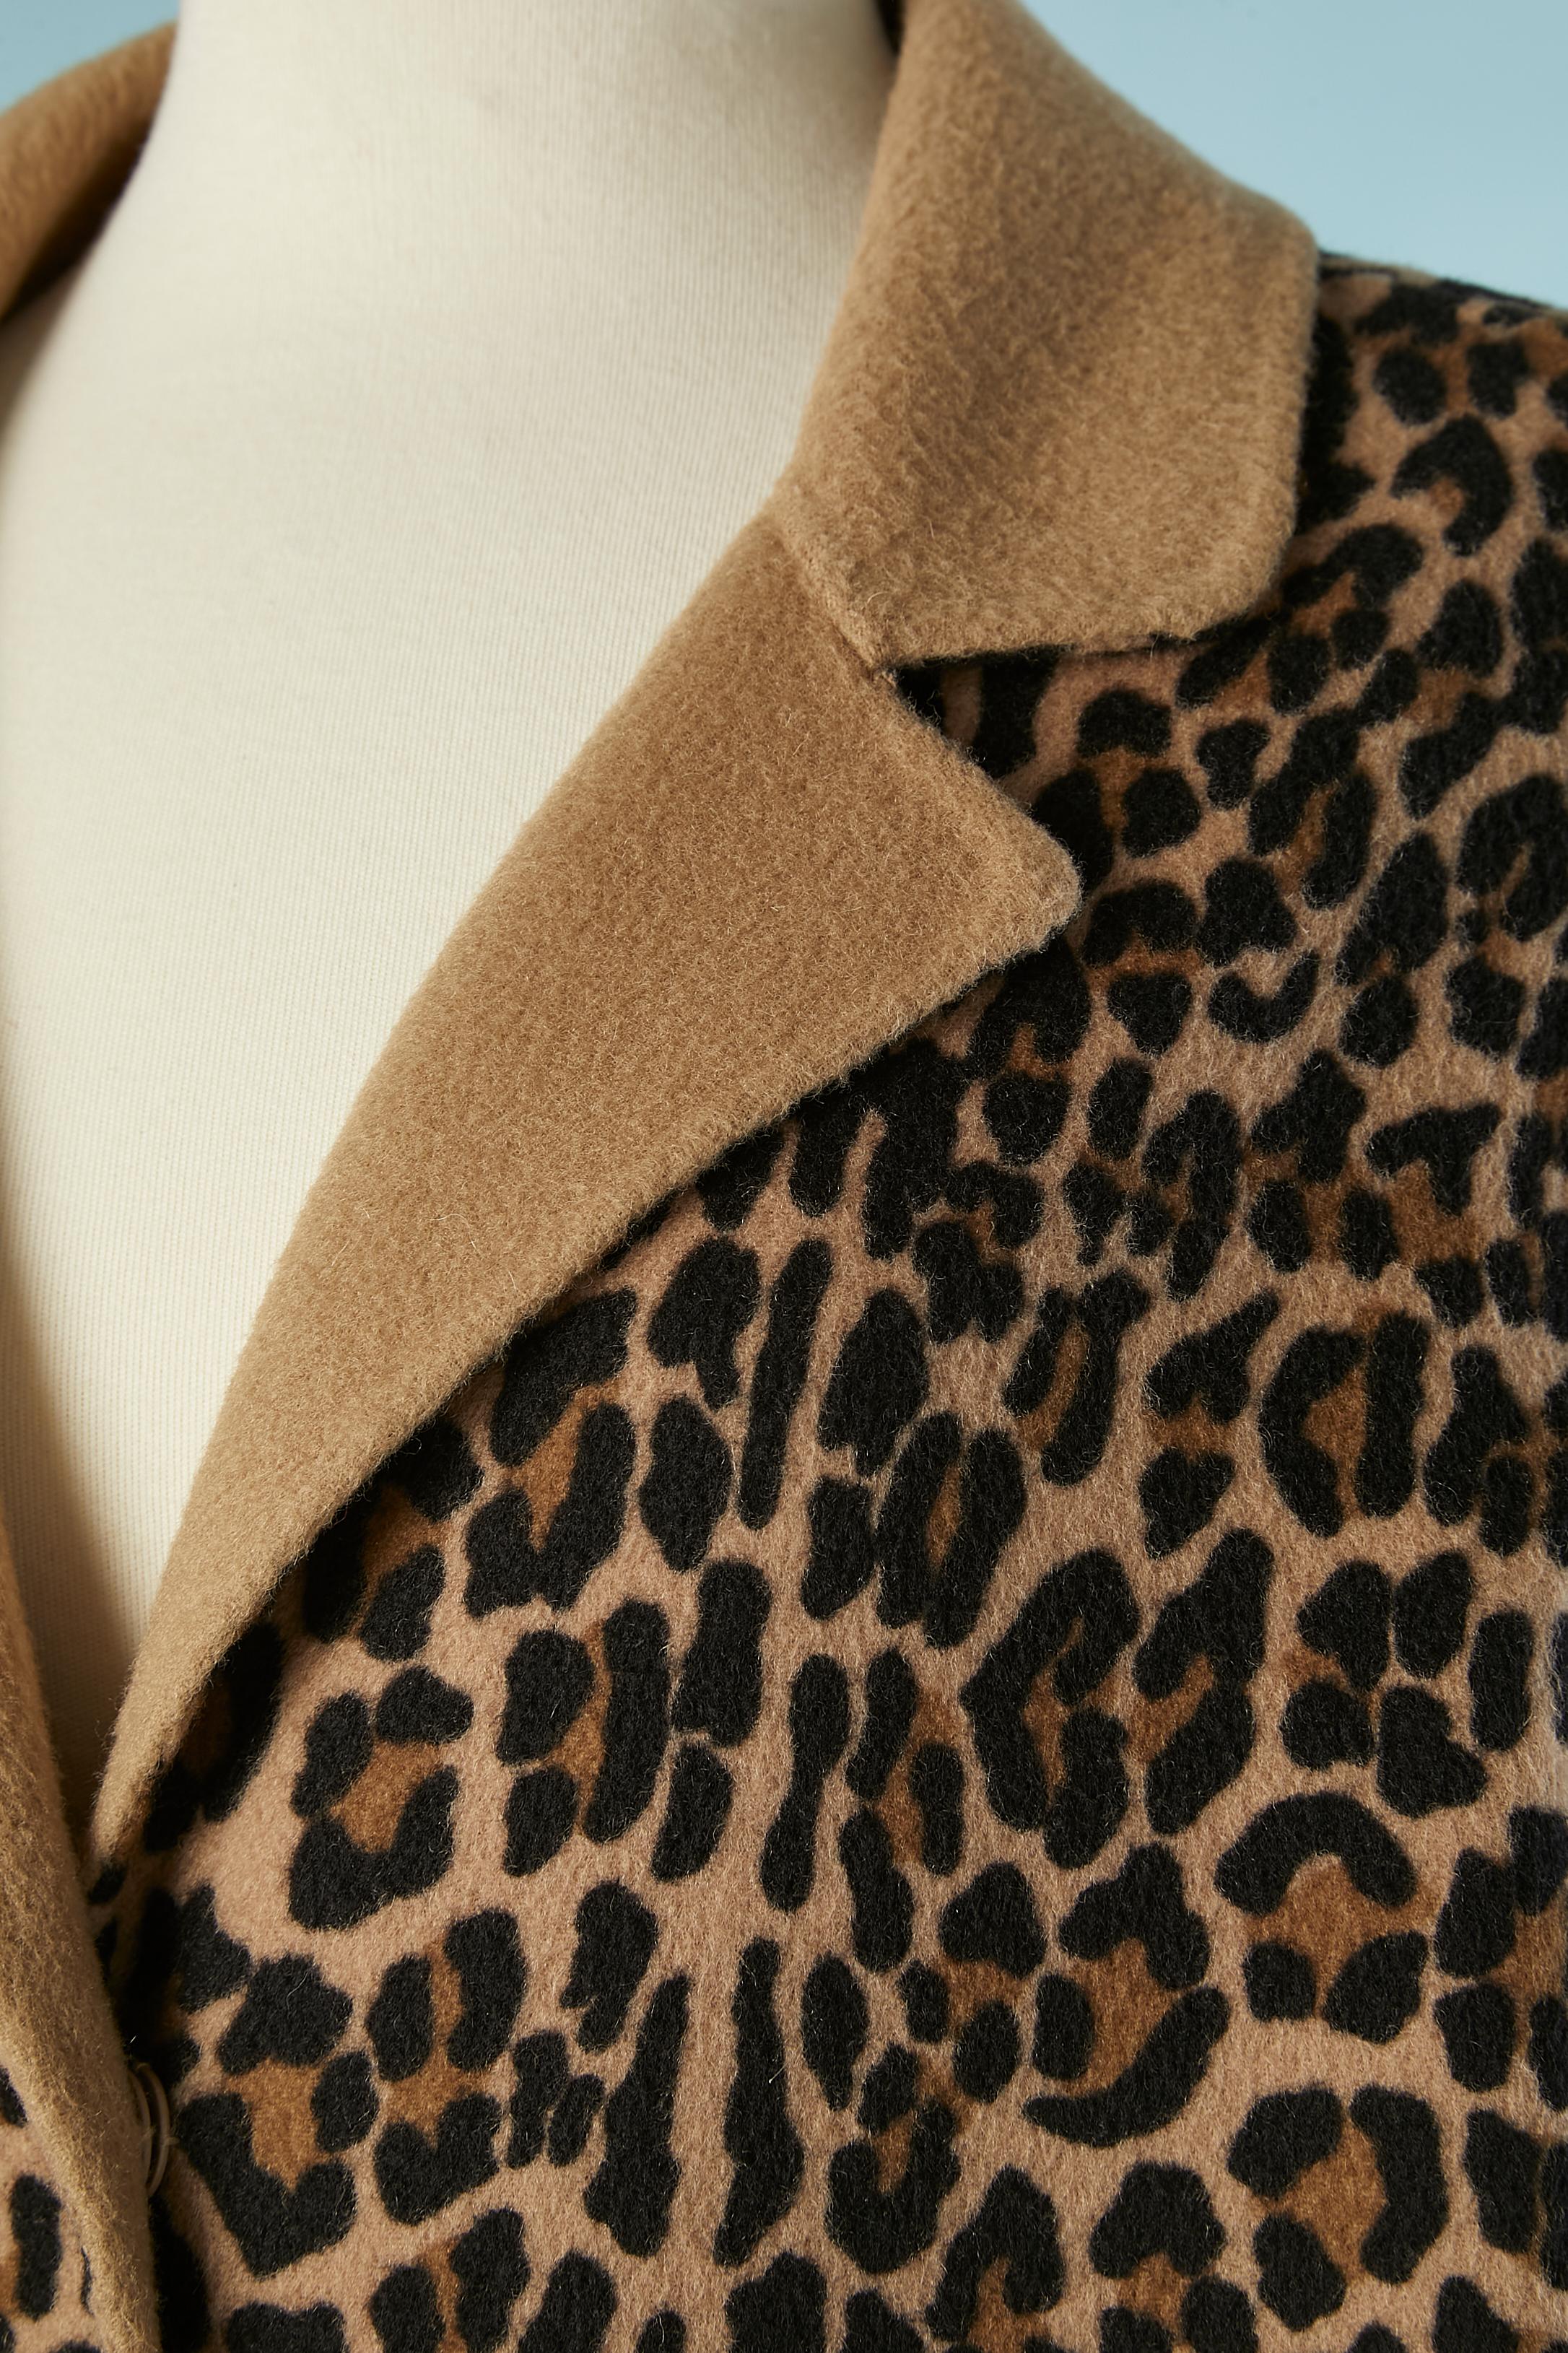 Manteau en laine double face à simple boutonnage avec motif léopard. Poches sur les deux côtés. Snap au milieu de l'avant. 
Composition du tissu : 80% laine, 20% nylon
Doublure (sur l'épaule et les poches) : Polyester
FABRIQUÉ
TAILLE M 